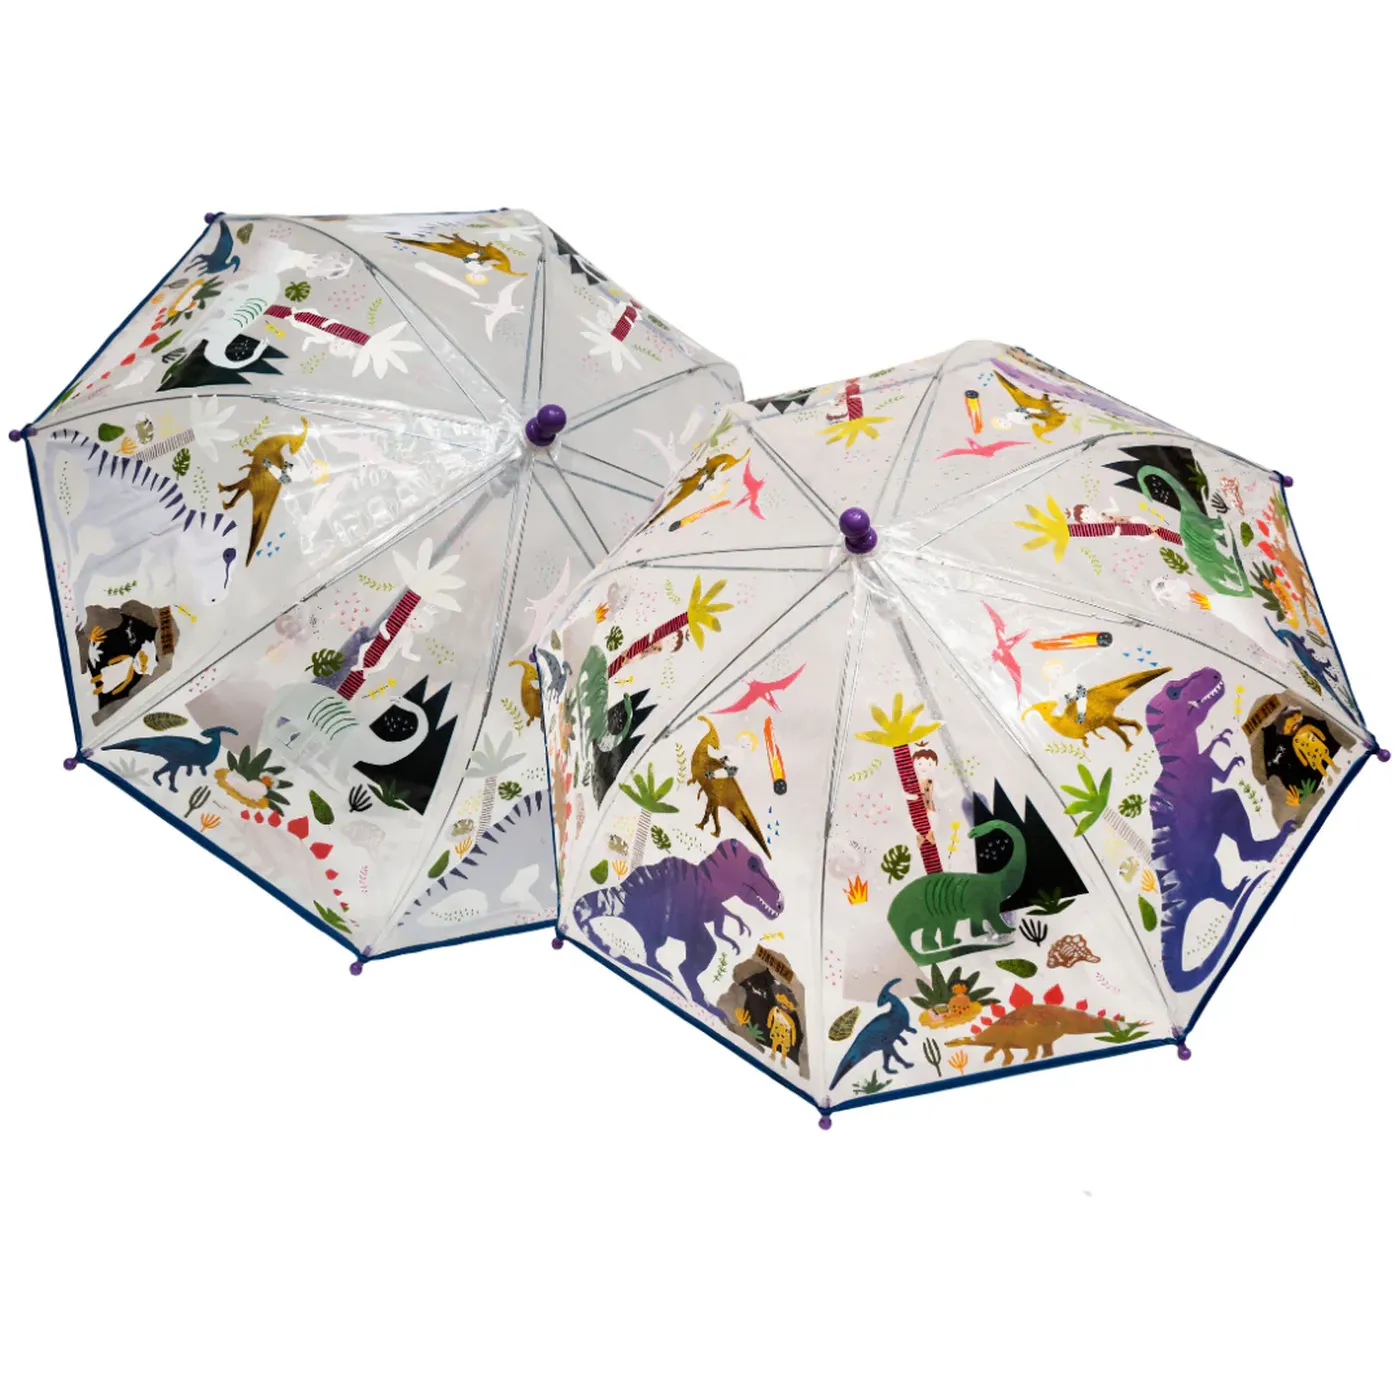 Umbrela transparenta pentru copii, in culori schimbatoare Dino, 3 ani+, Floss & Rock